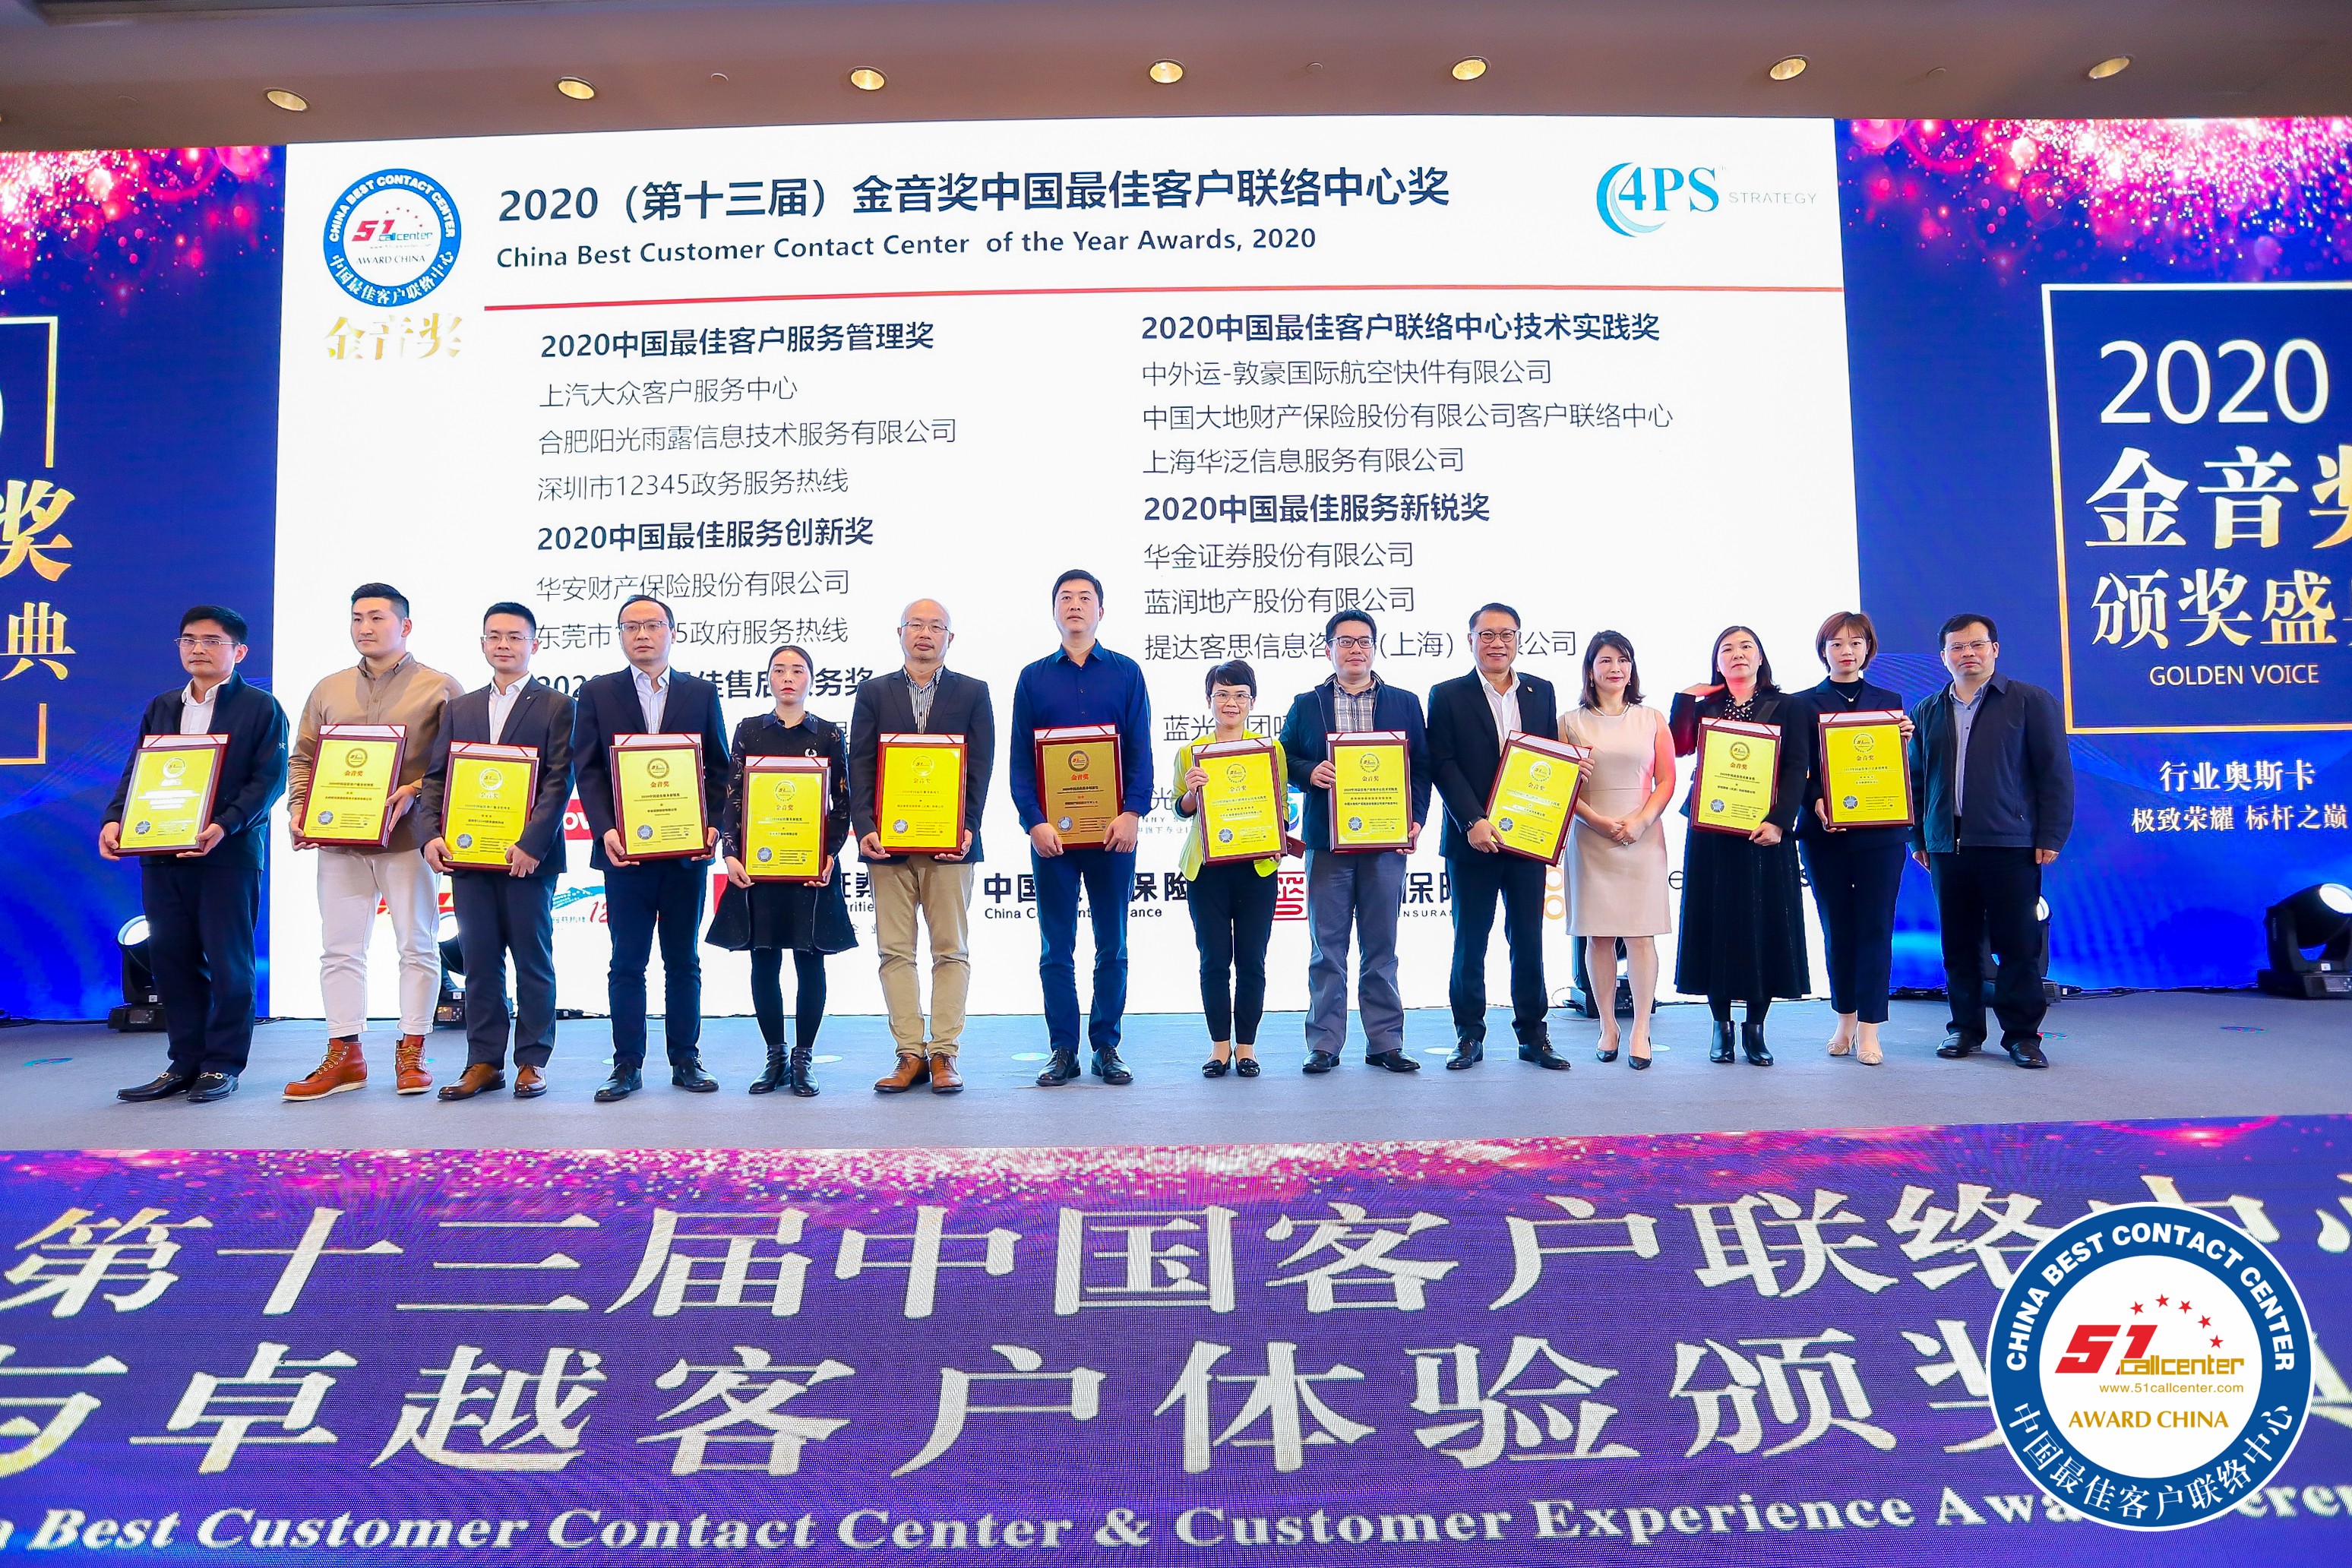 华安保险95556电话服务中心获评“2020中国最佳服务创新奖”